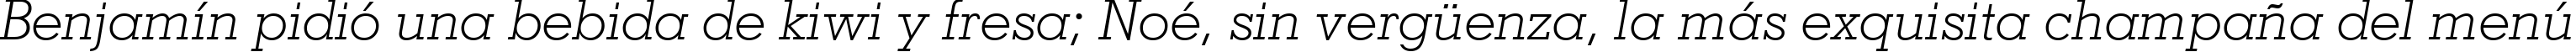 Пример написания шрифтом Geometric Slabserif 703 Light Italic BT текста на испанском